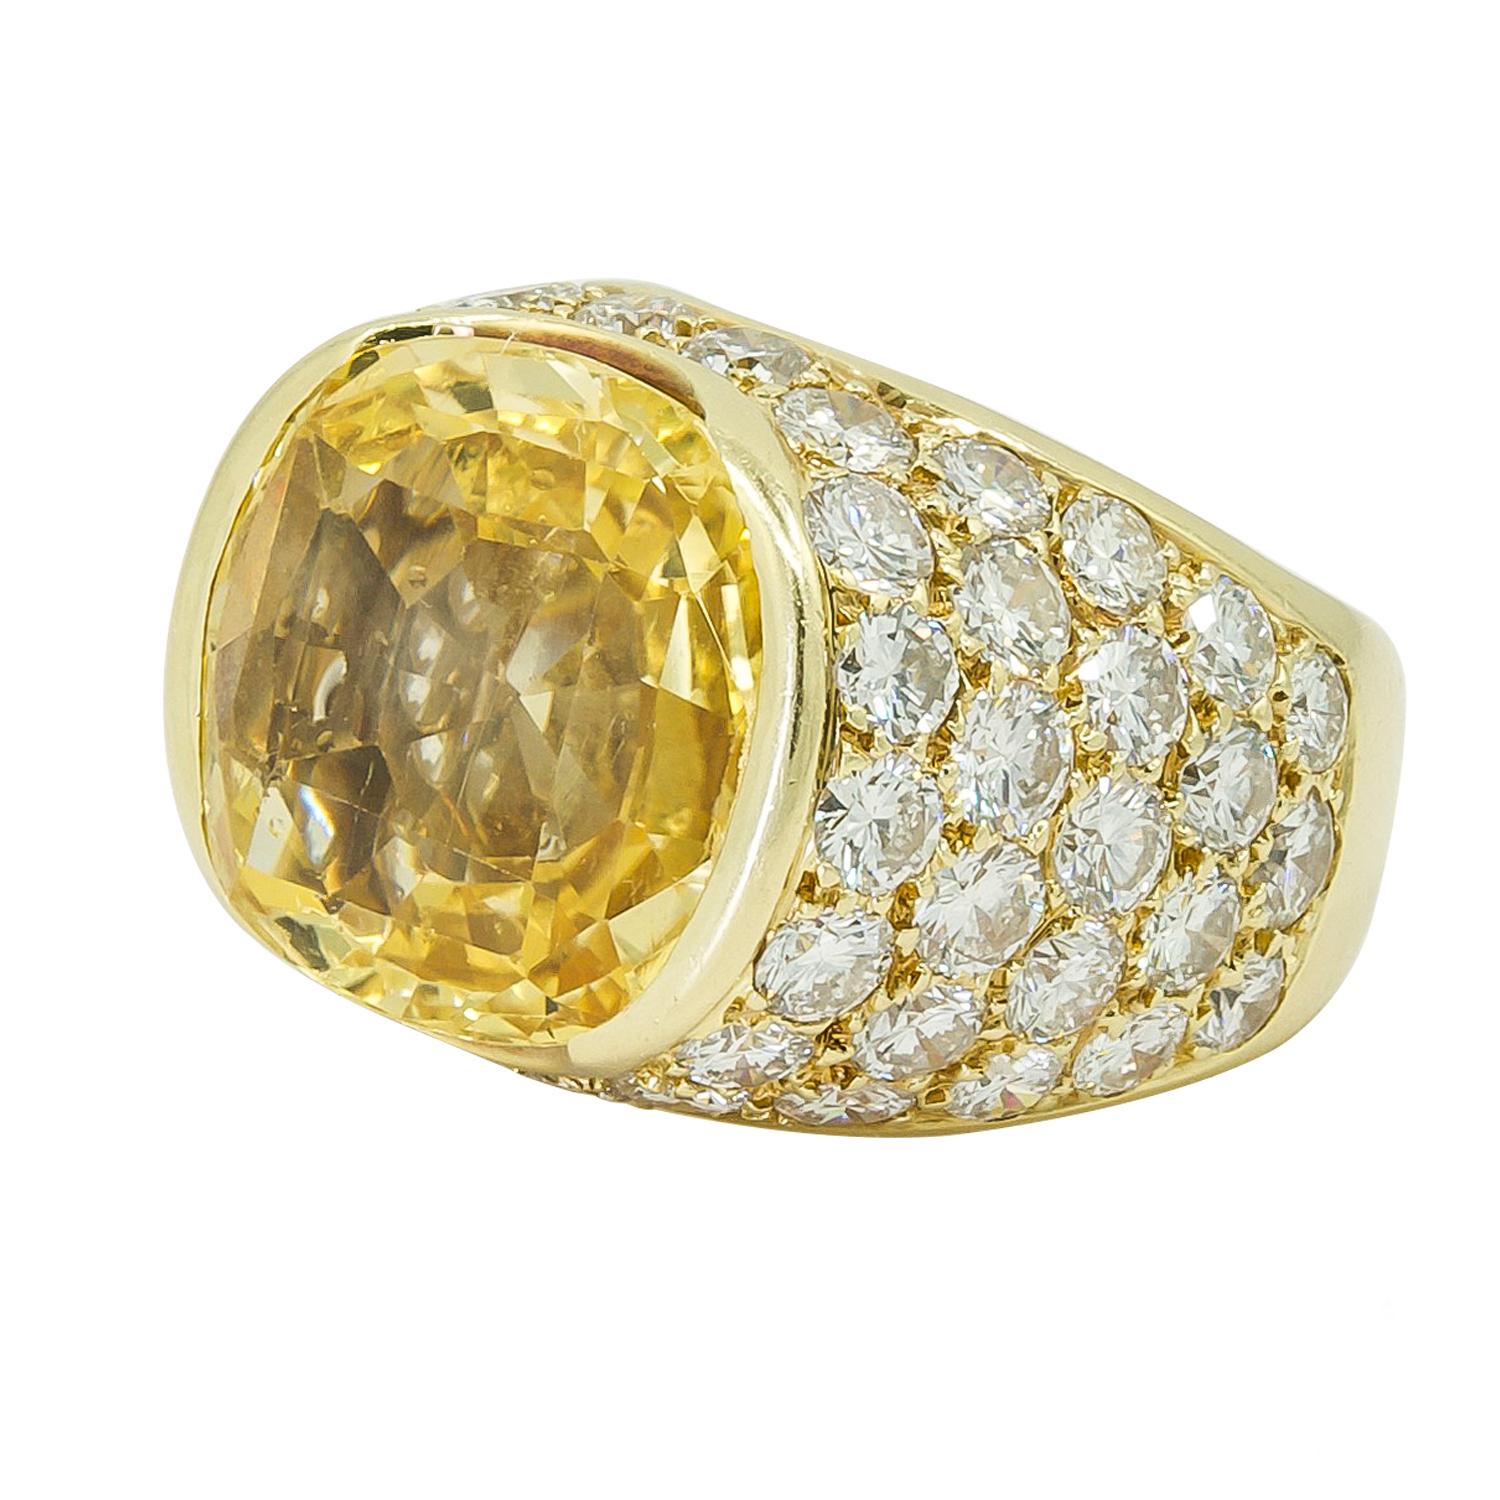 VAN CLEEF & ARPELS Bague diamant et saphir jaune
Bague en or jaune 18 carats, sertie de diamants et de saphir jaune CIRCA no heat, signée Van Cleef & Arpels, vers les années 1980.
Saphir jaune d'environ 18 cts. Il est accompagné d'un certificat